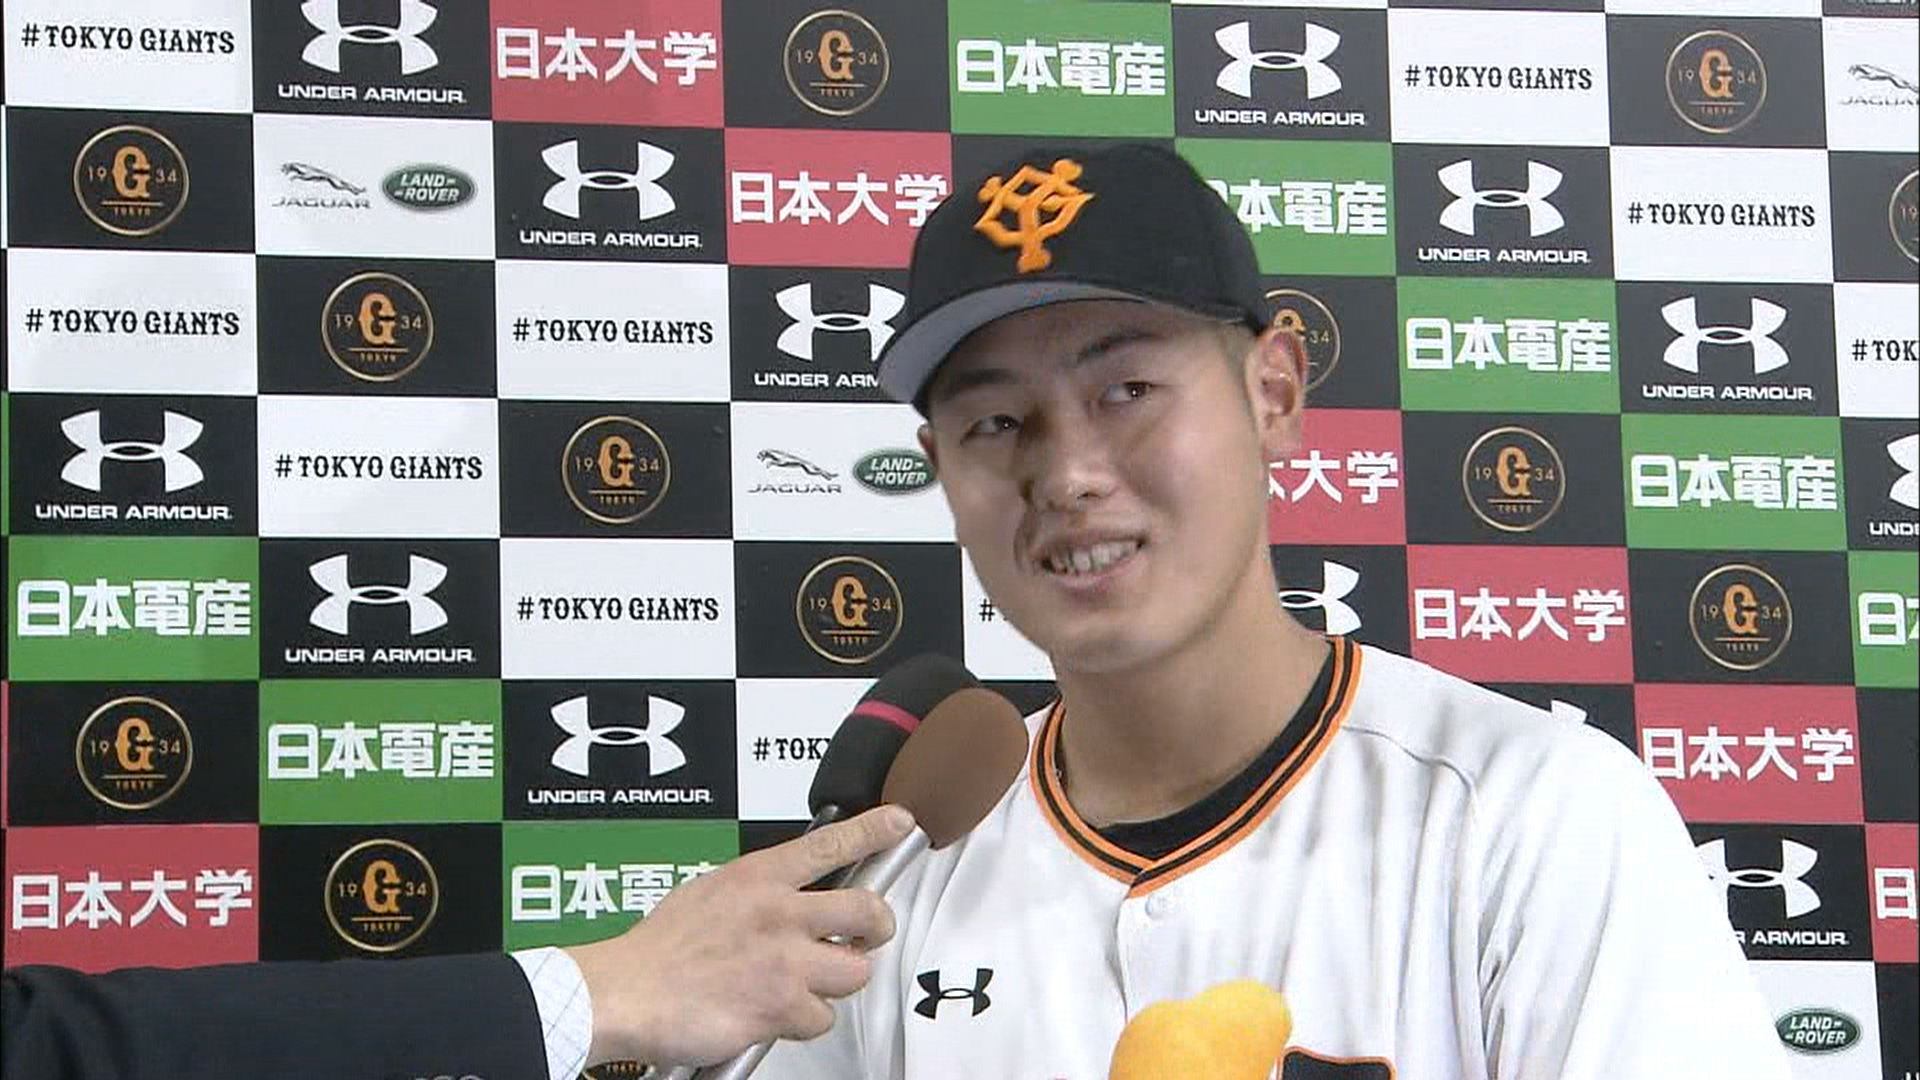 ジョニー デップ岡本 キャッチフレーズはスターの証 Dramatic Baseball 日本テレビ